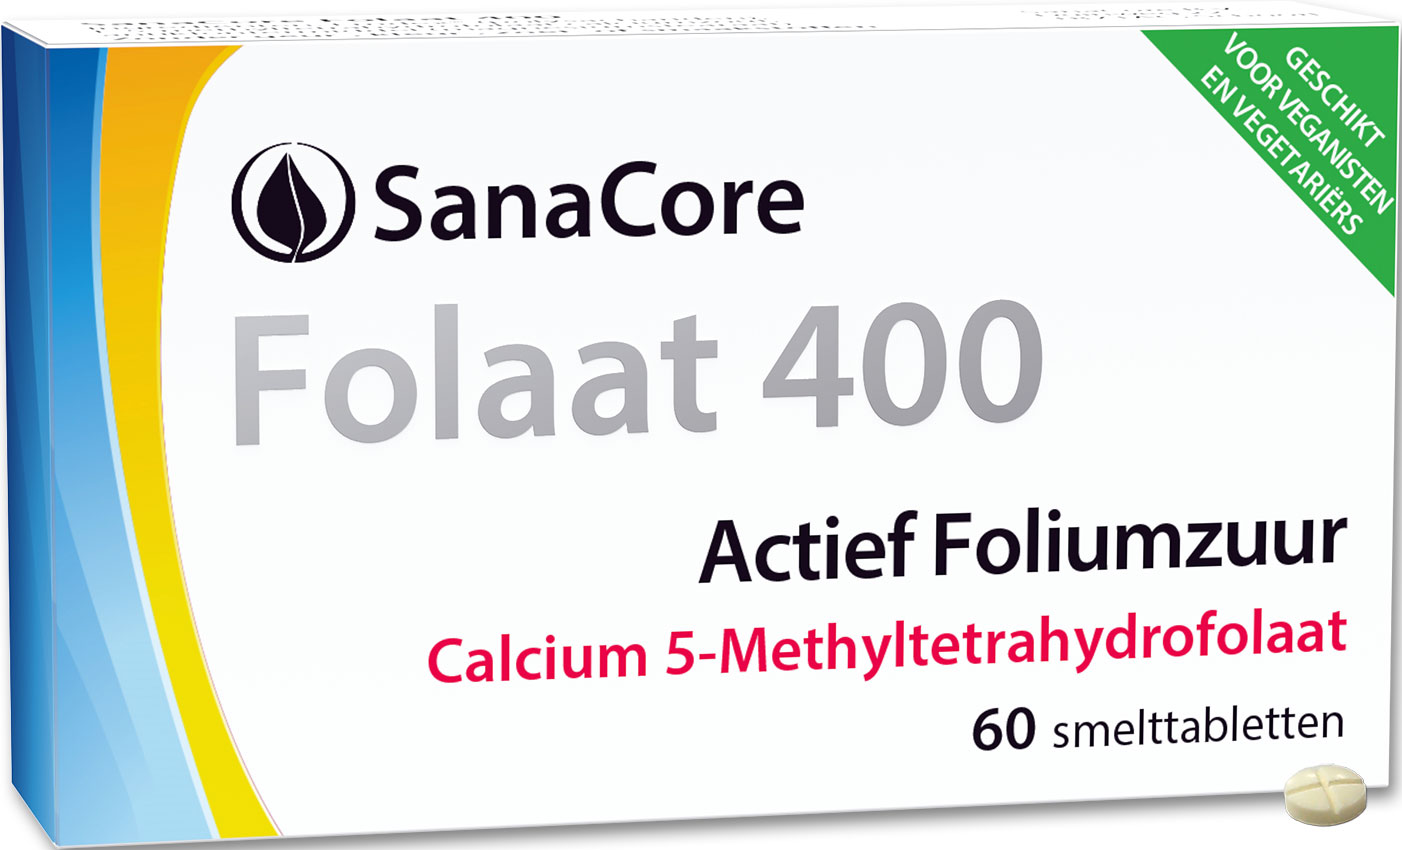 SanaCore Folaat 400 Calcium